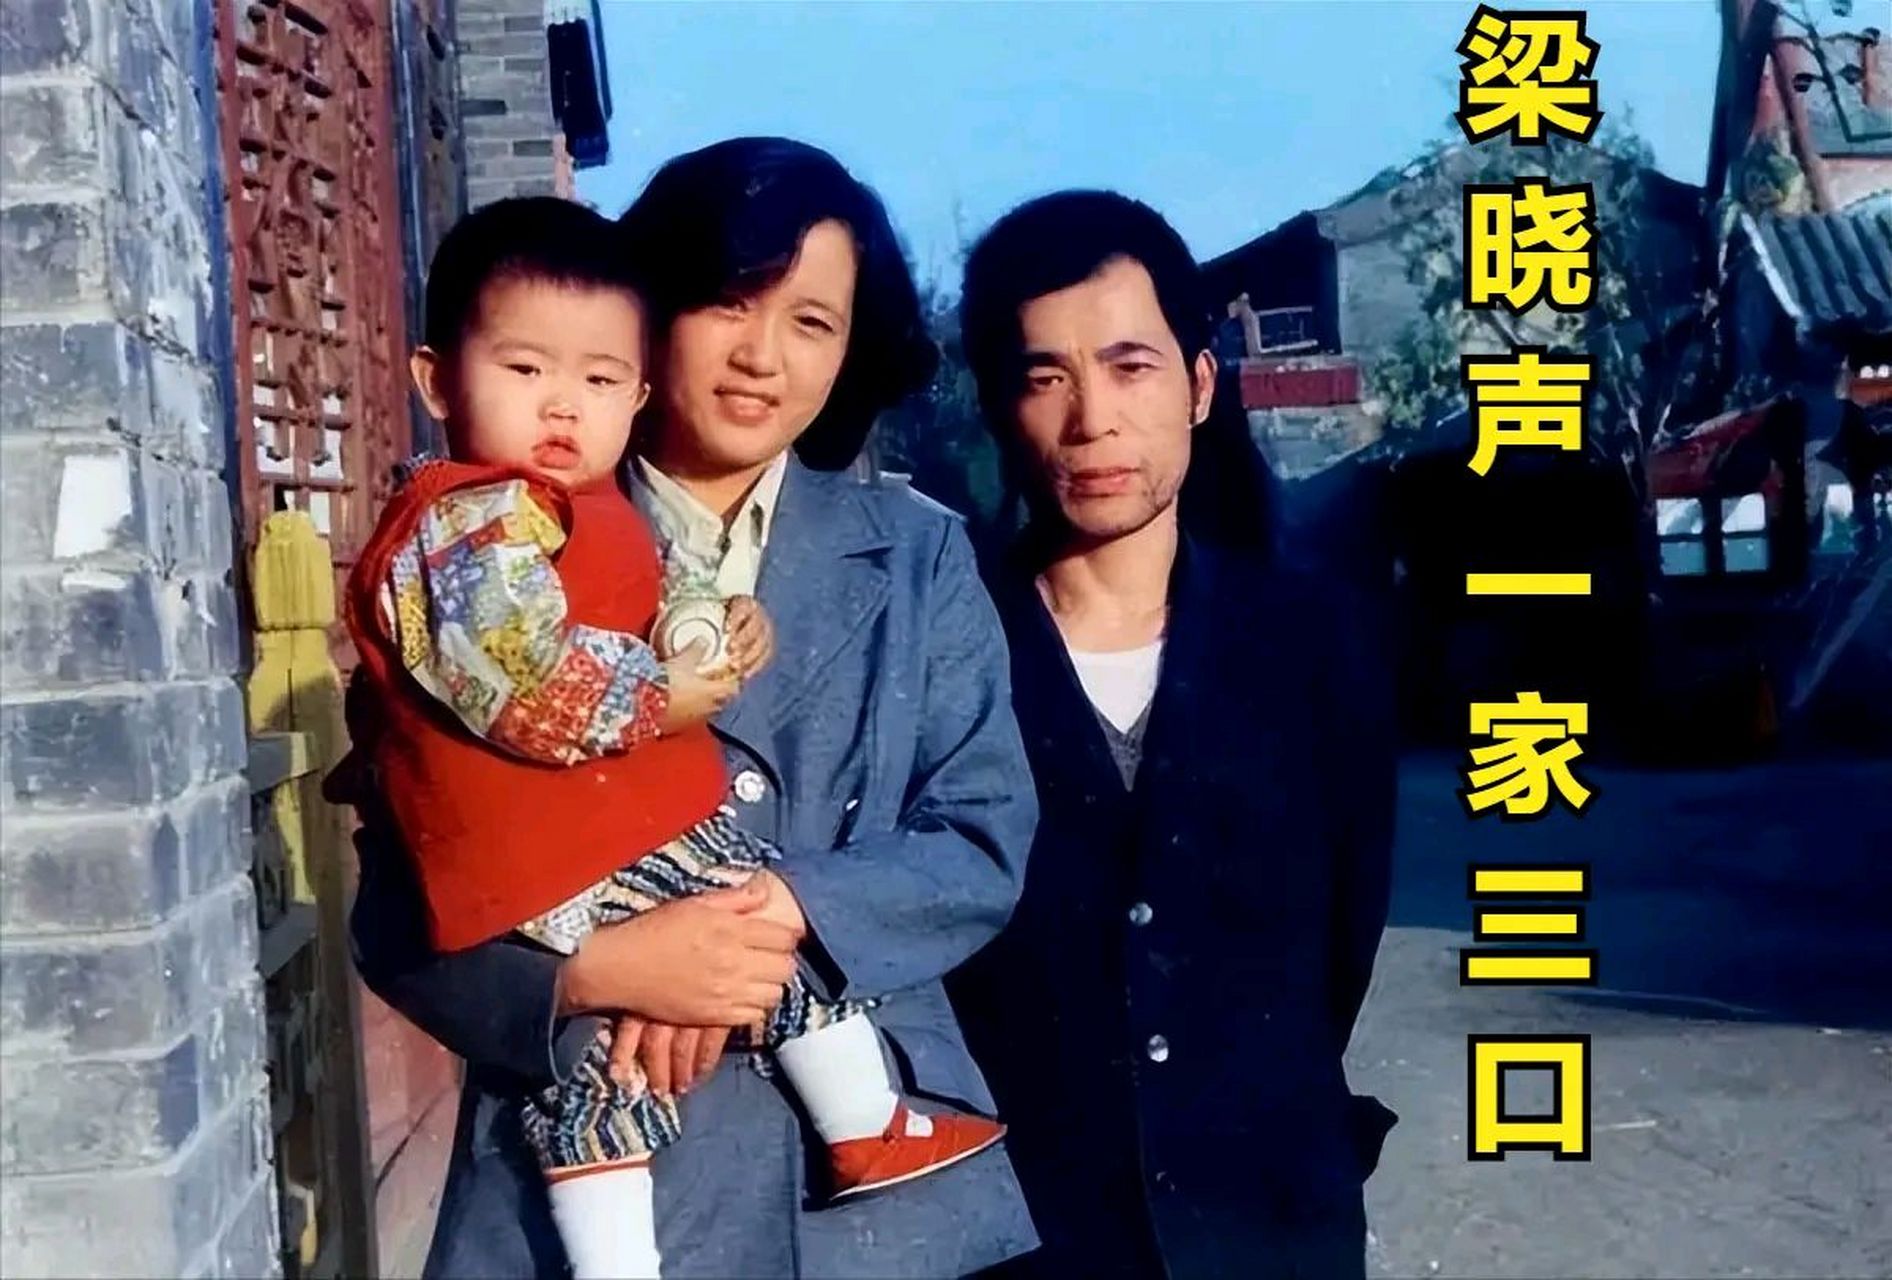 1981年,梁晓声icon和北京姑娘焦丹相亲,介绍人警告梁晓声别说实话,没